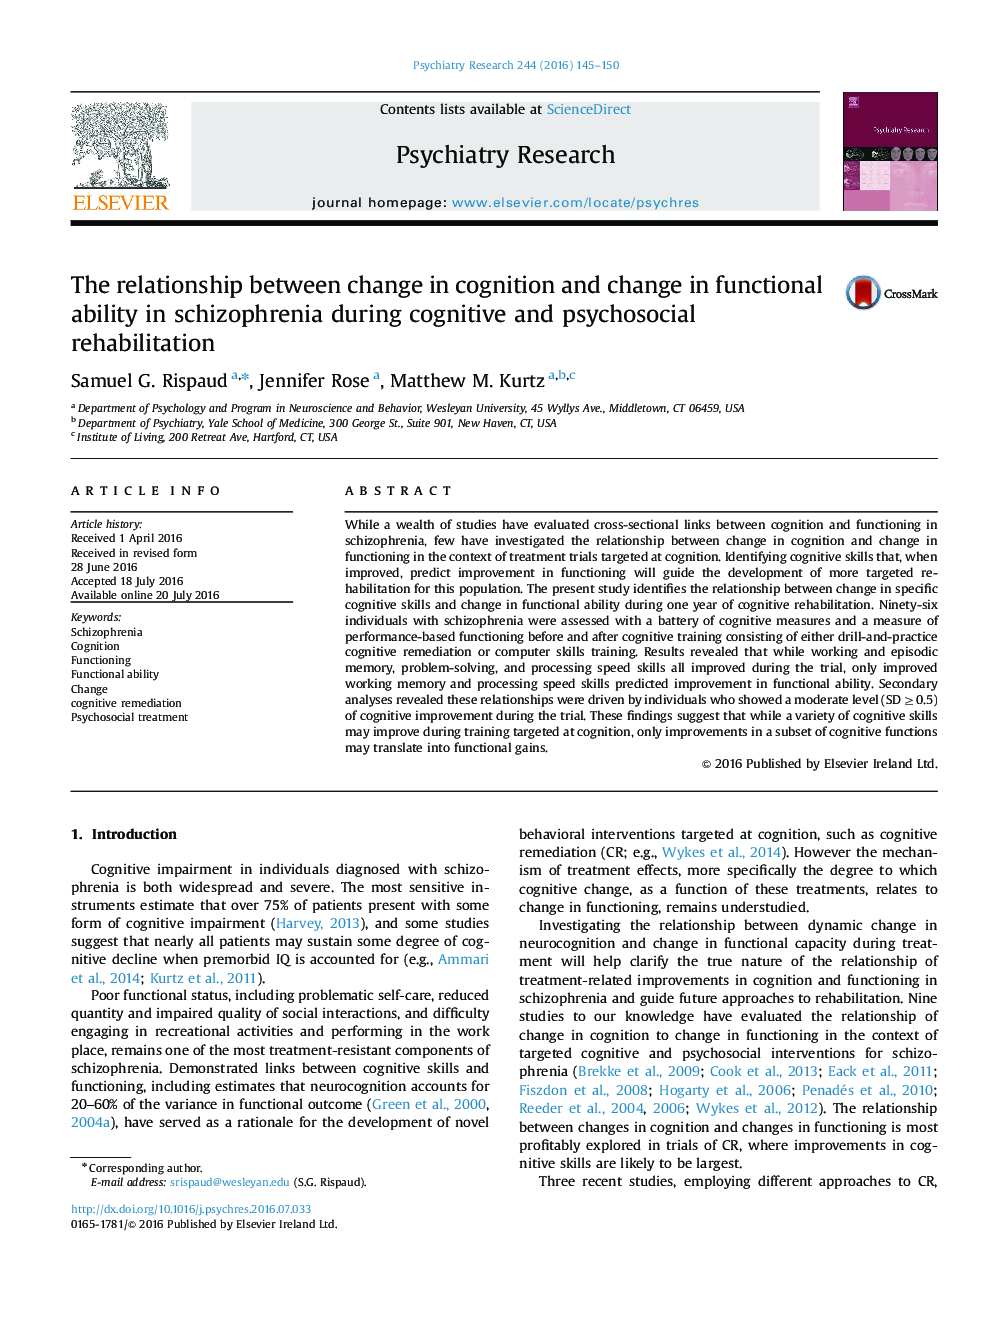 رابطه بین تغییر در شناخت و تغییر در توانایی عملکرد در اسکیزوفرنی در طول توانبخشی شناختی و روانی